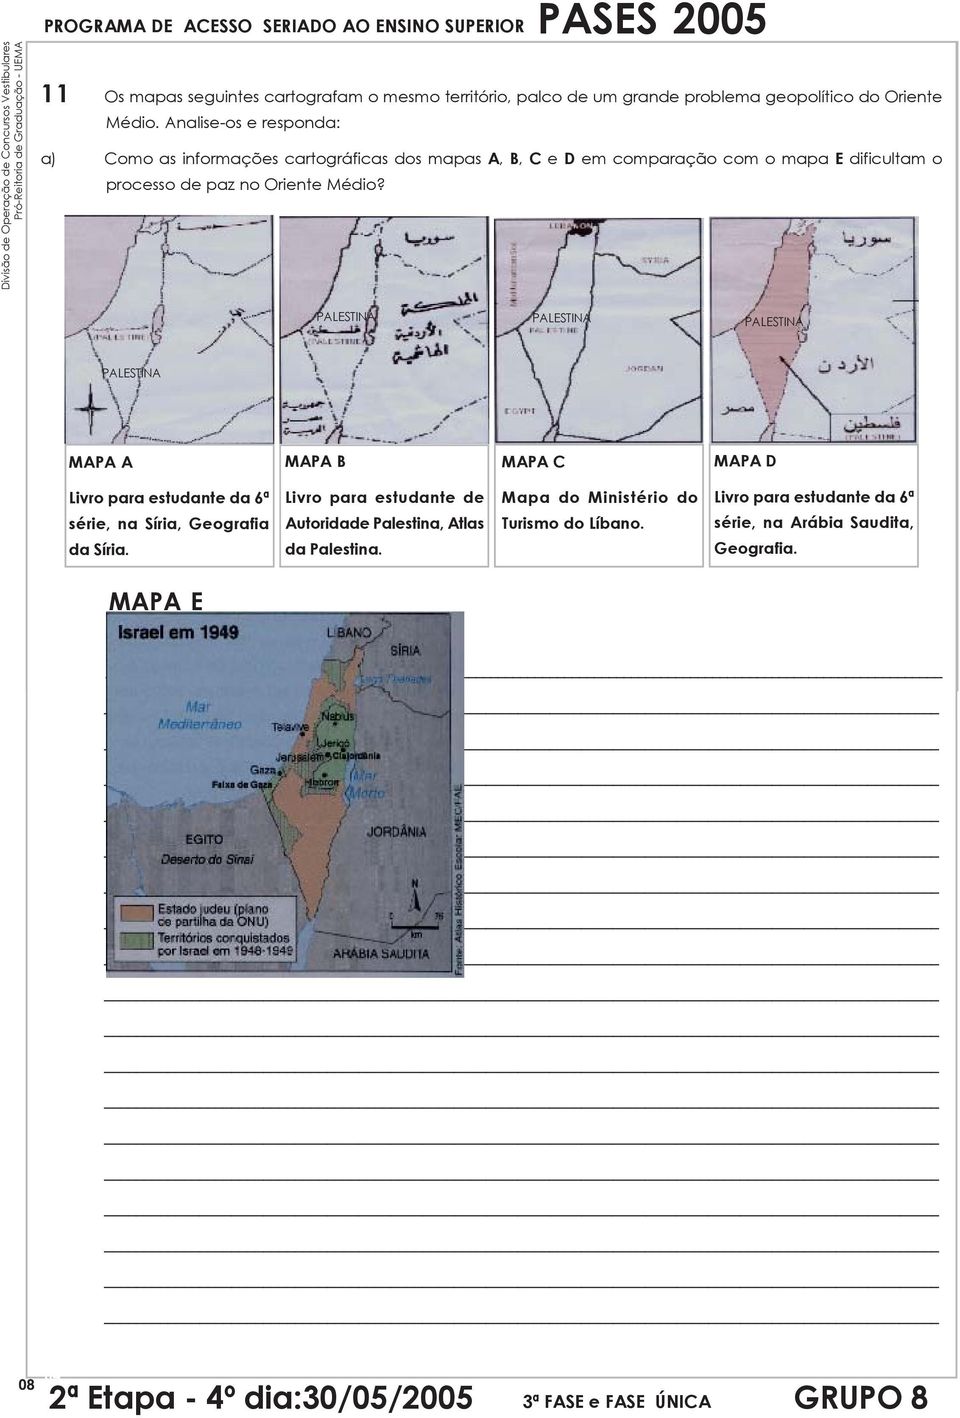 Analise-os e responda: a) Como as informações cartográficas dos mapas A, B, C e D em comparação com o mapa E dificultam o processo de paz no Oriente Médio?